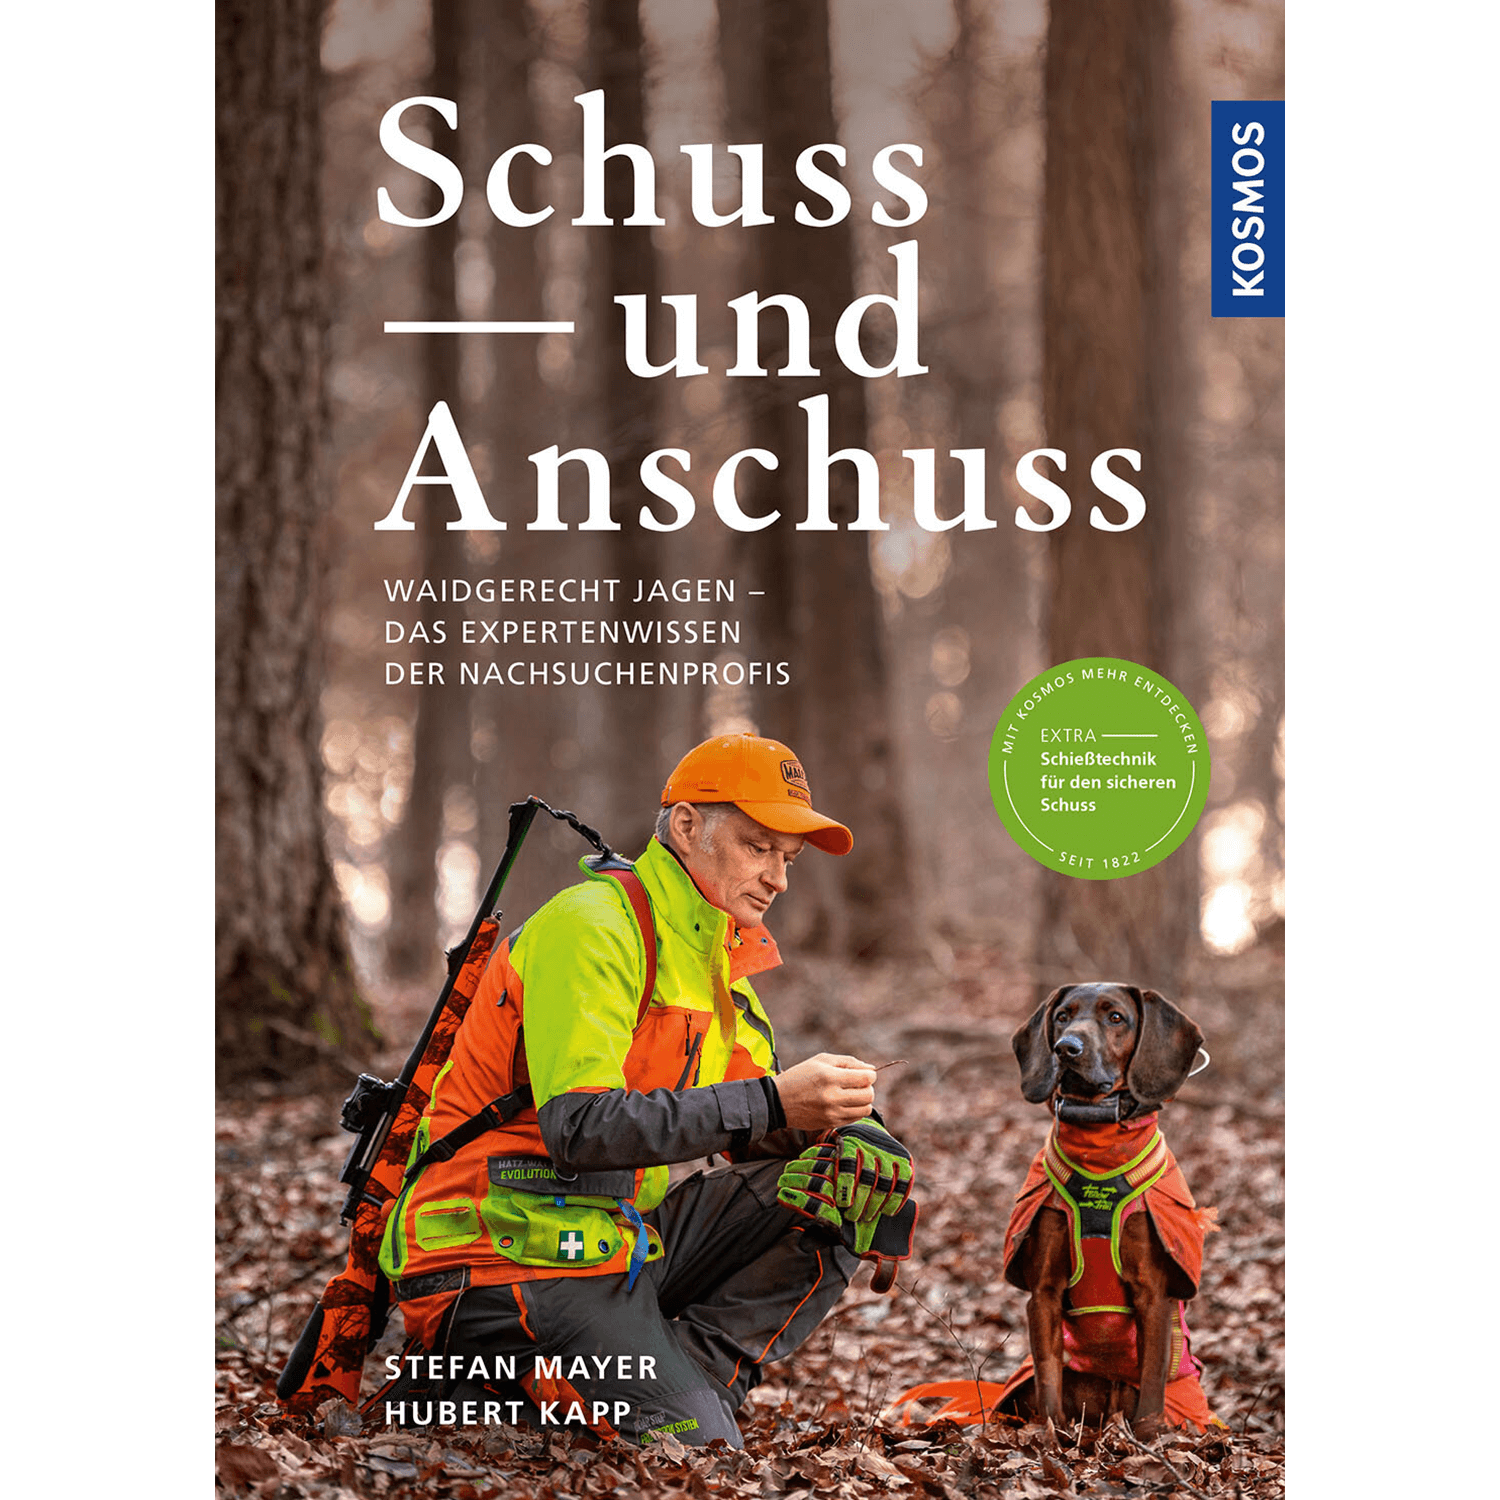 Schuss und Anschuss - Buch - Stefan Mayer & Hubert Kapp